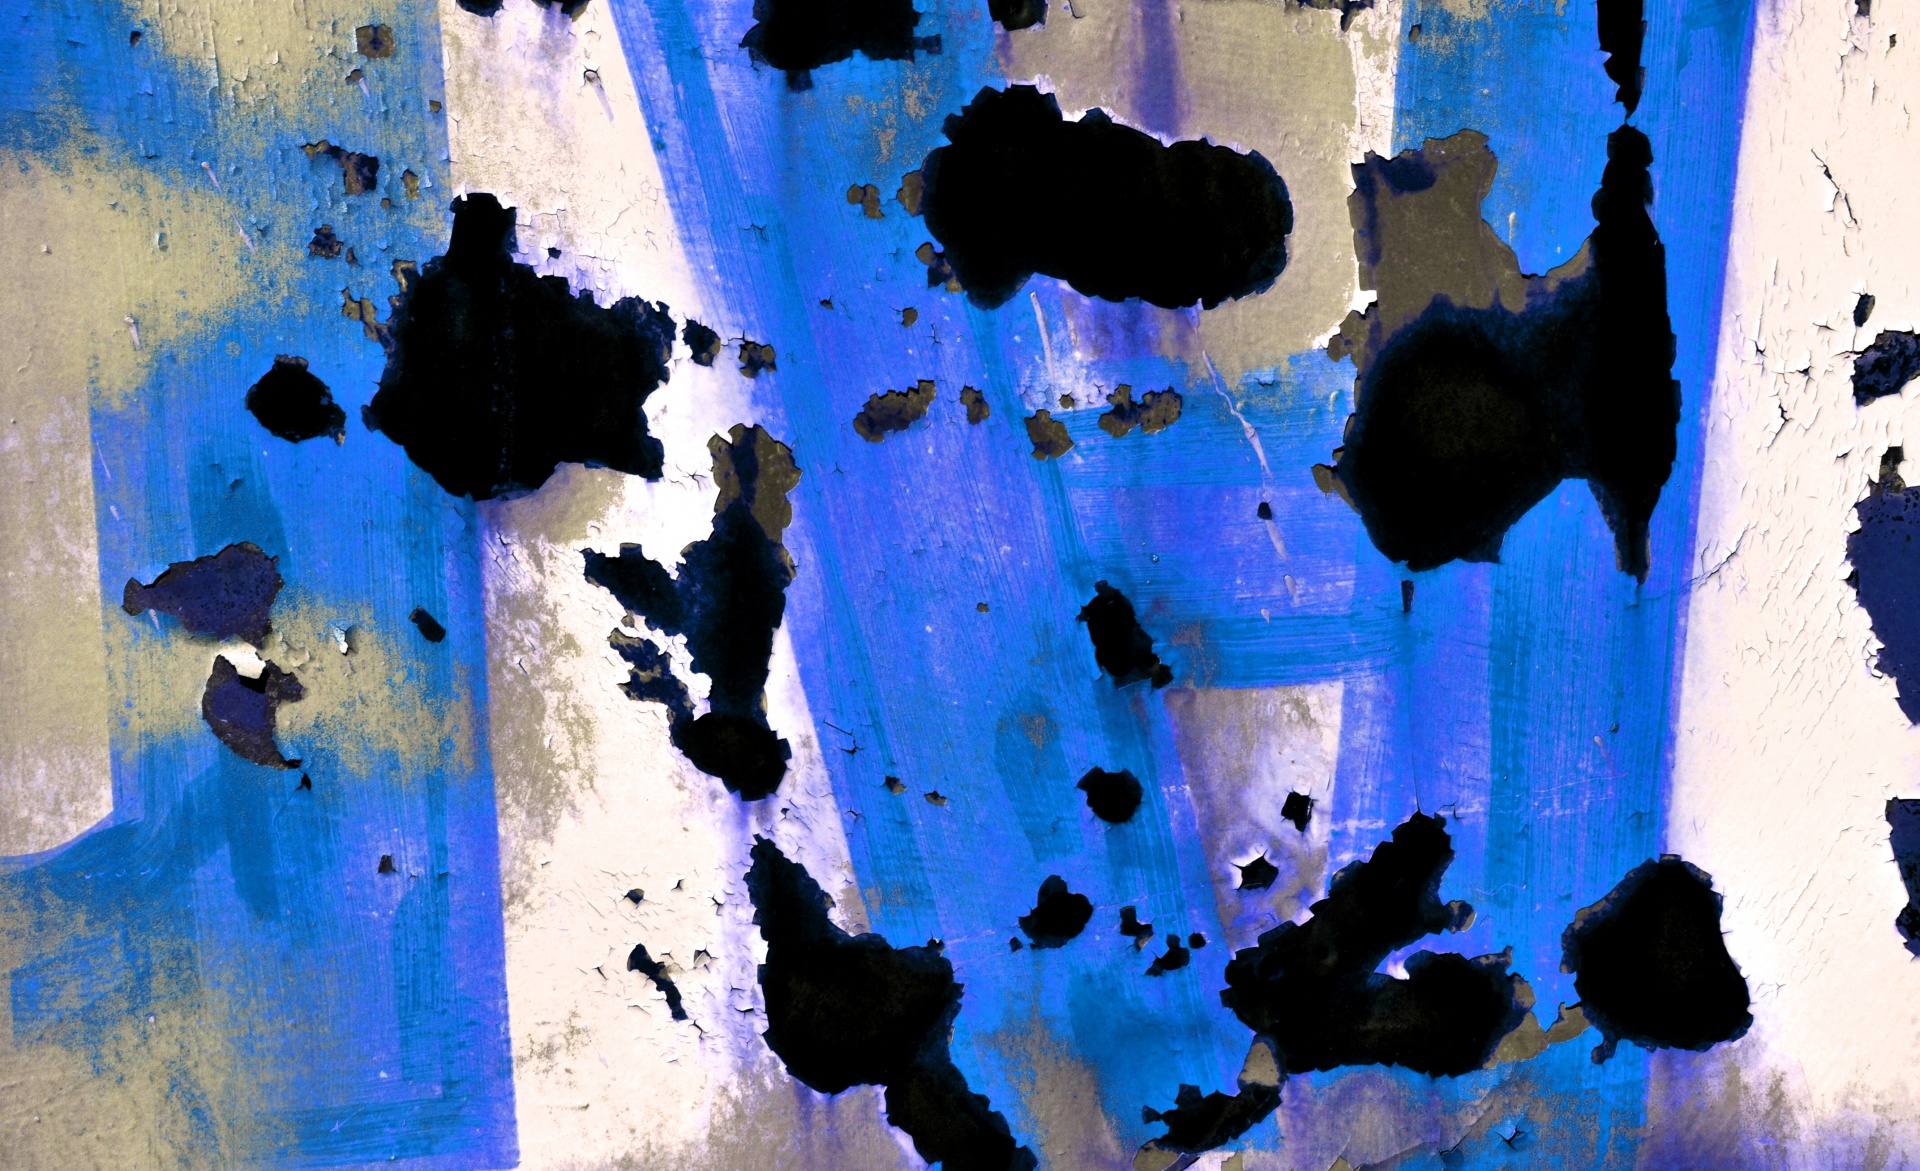 Abstract Grunge azul do fundo